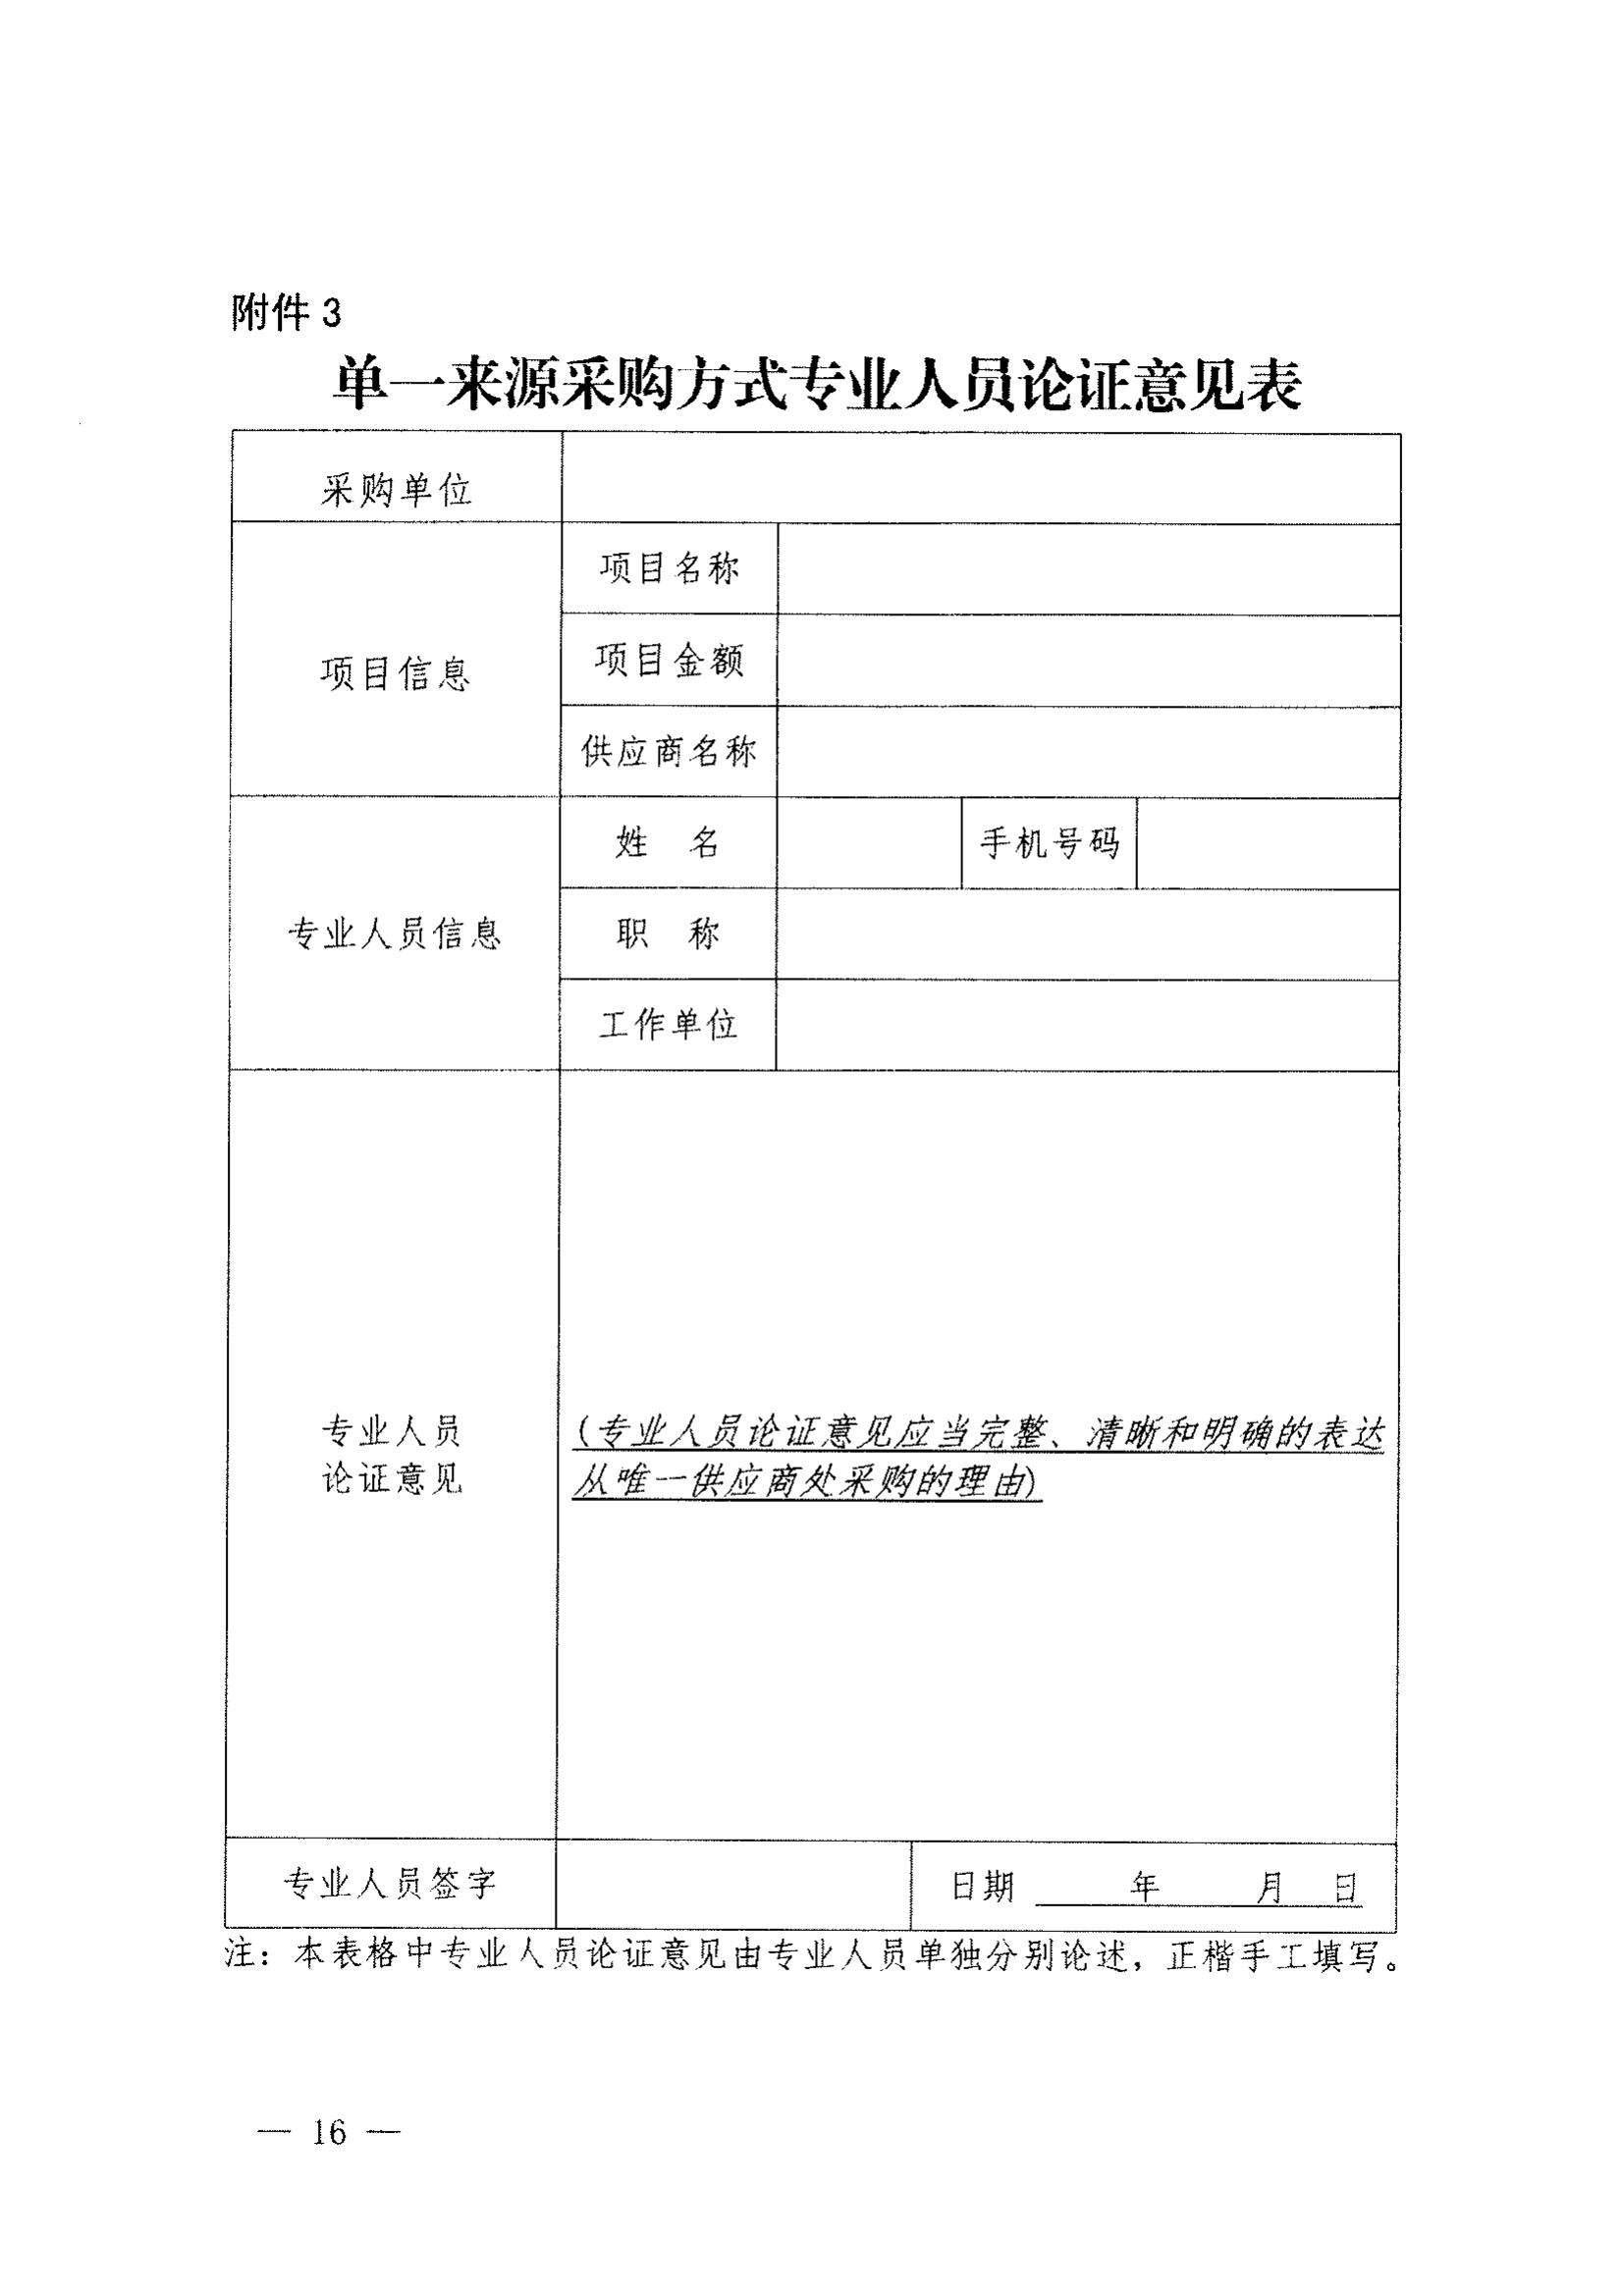 登封市财政局关于转发《郑州市财政局关于规范市级单一来源采购方式有关事项的通知》通知(图18)